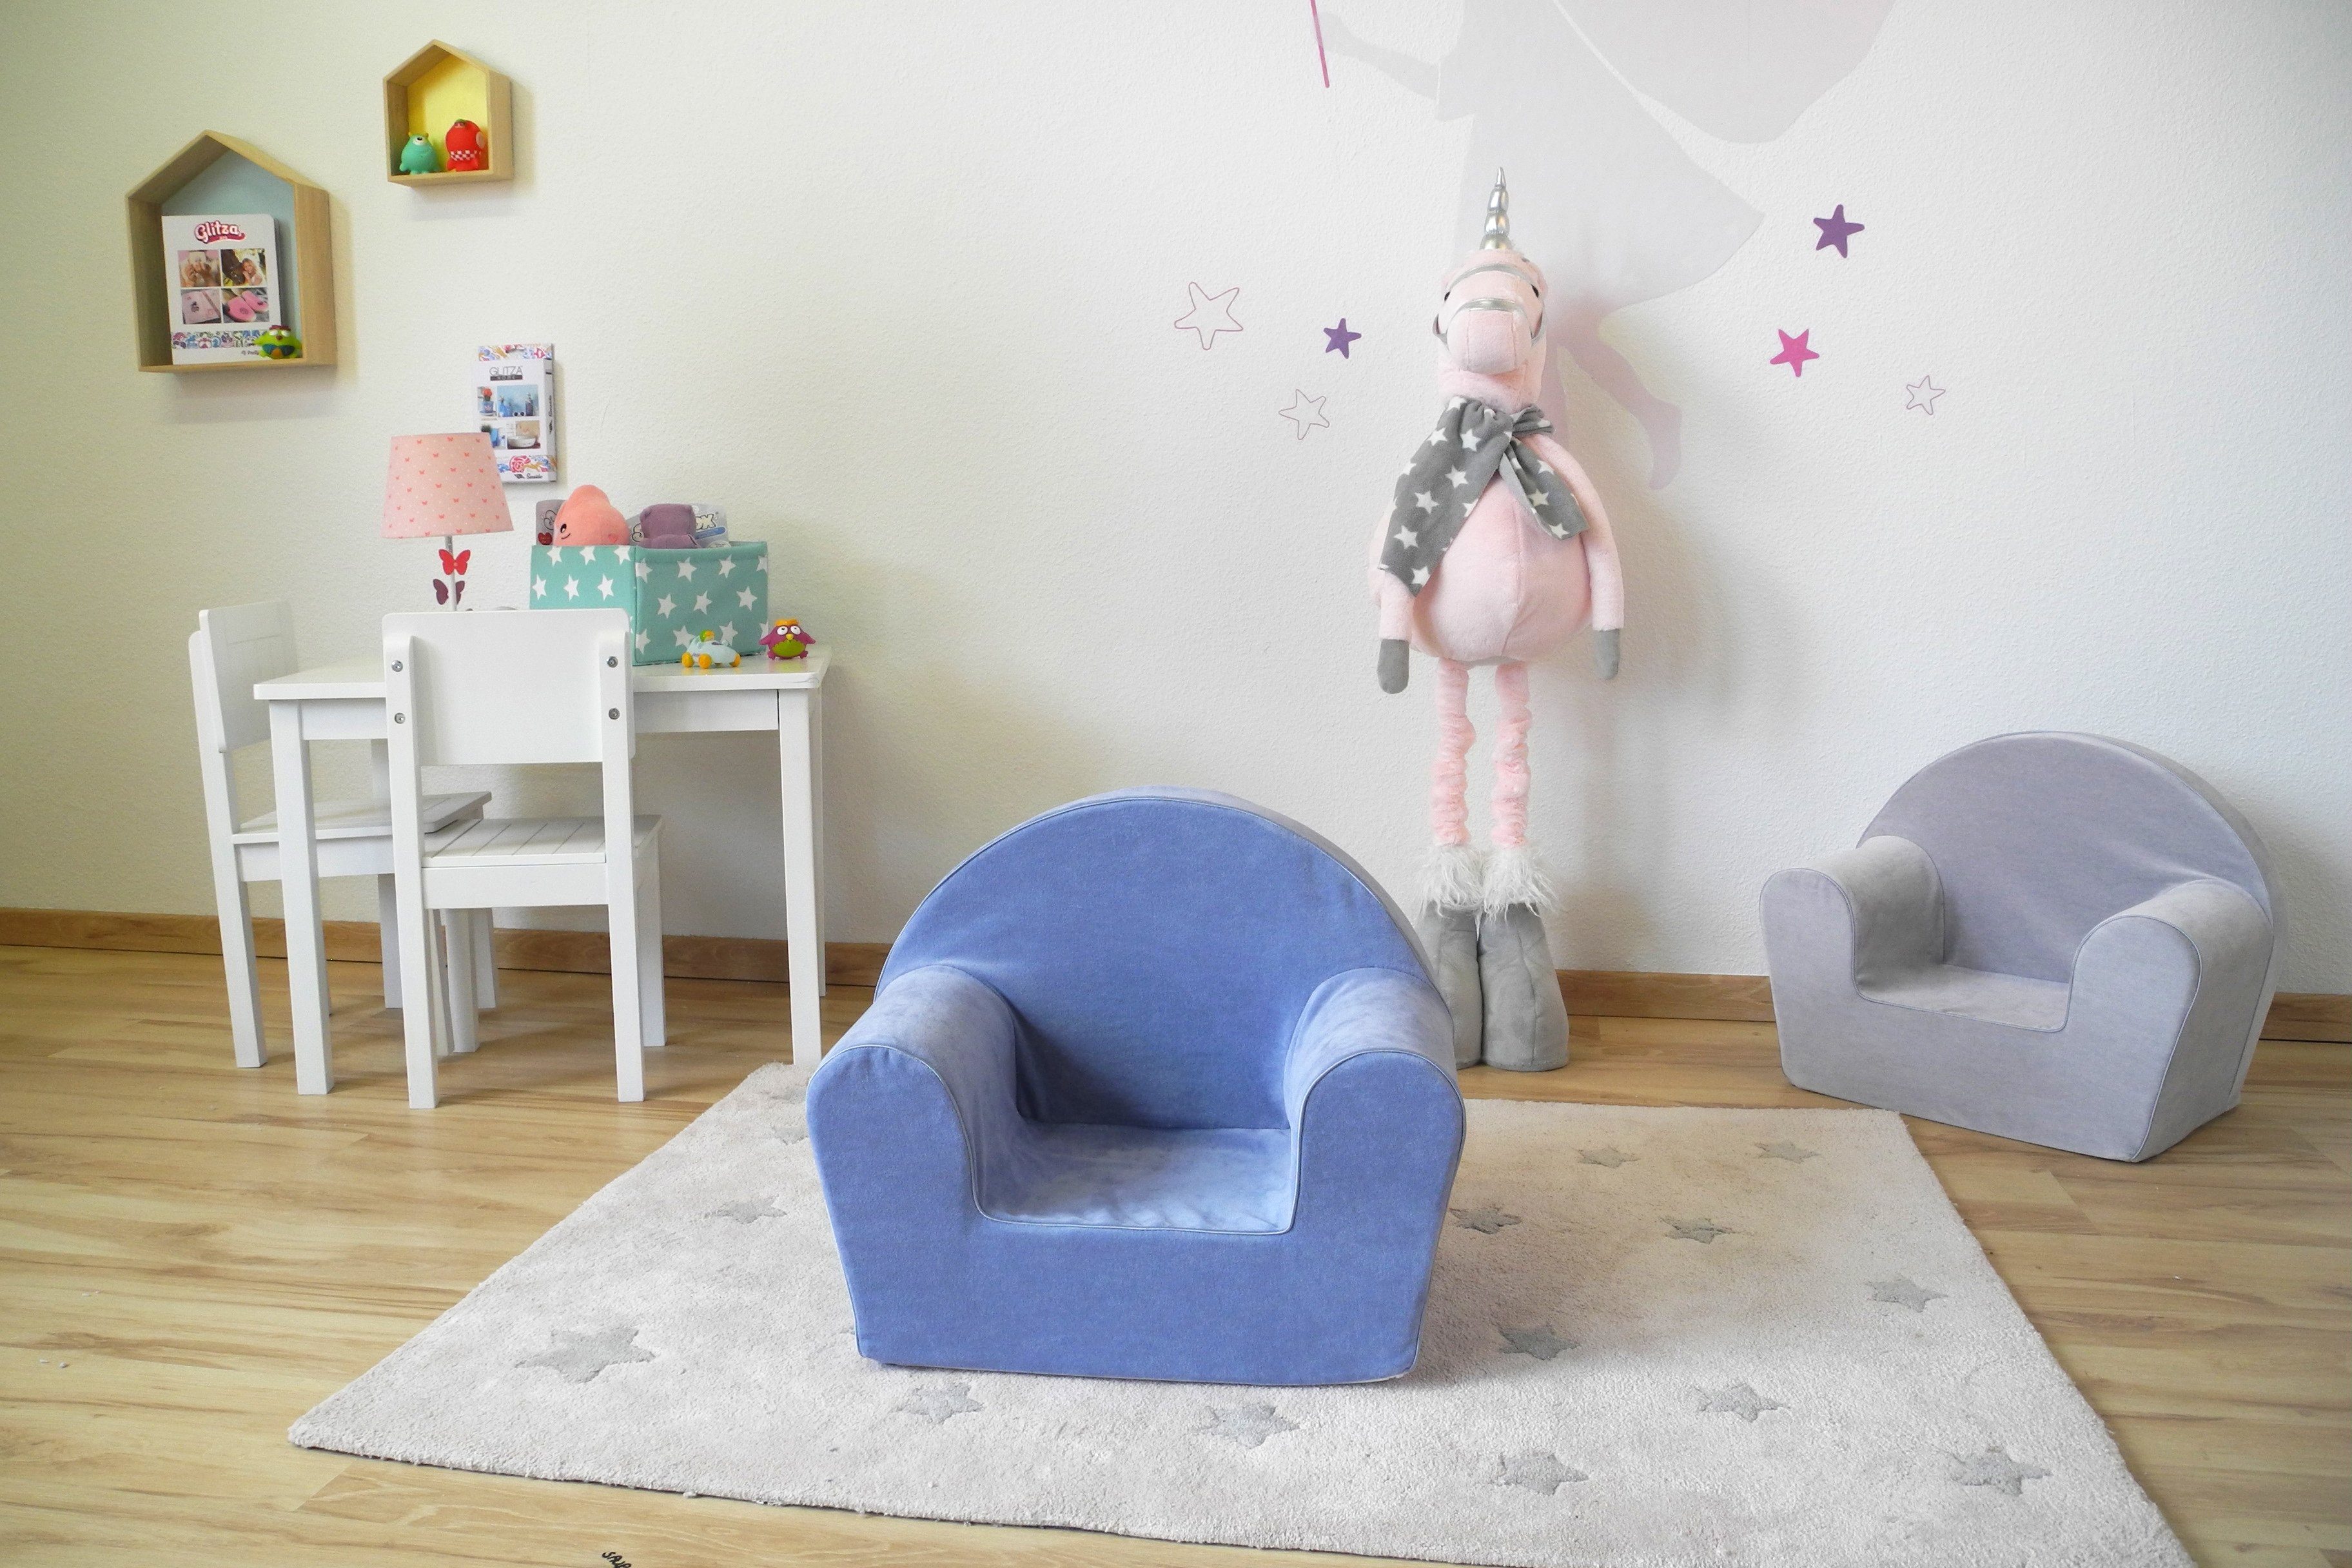 Knorrtoys® Blue, Europe Kinder; Made für Sessel Soft in